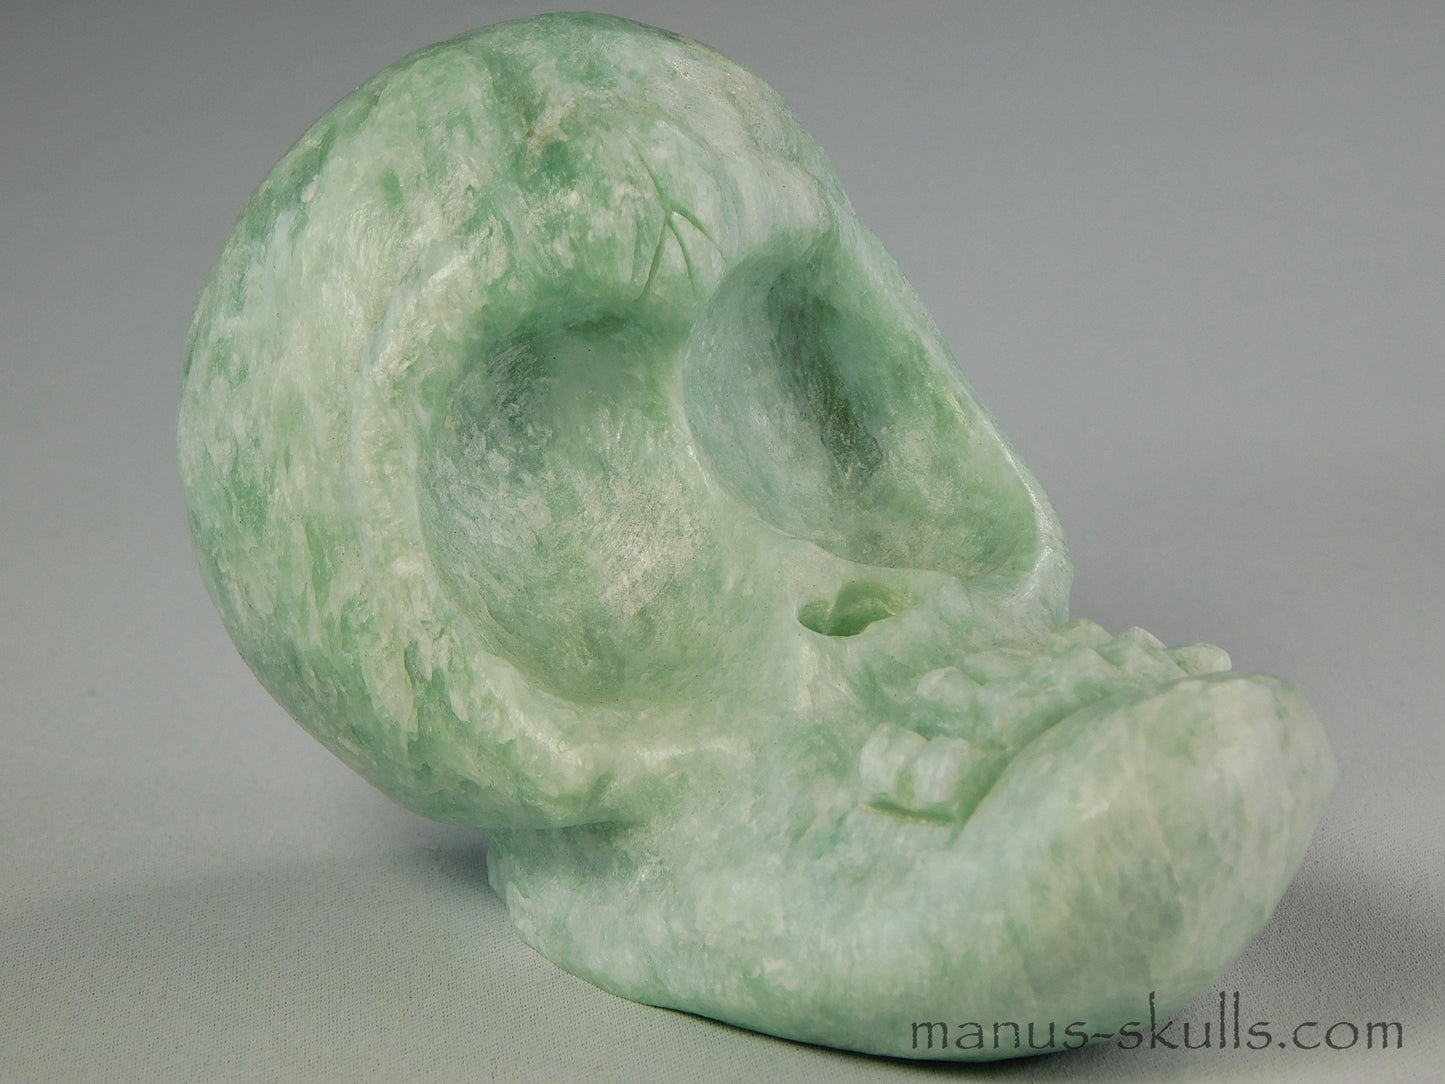 Green Steatite Evolian Skull #46